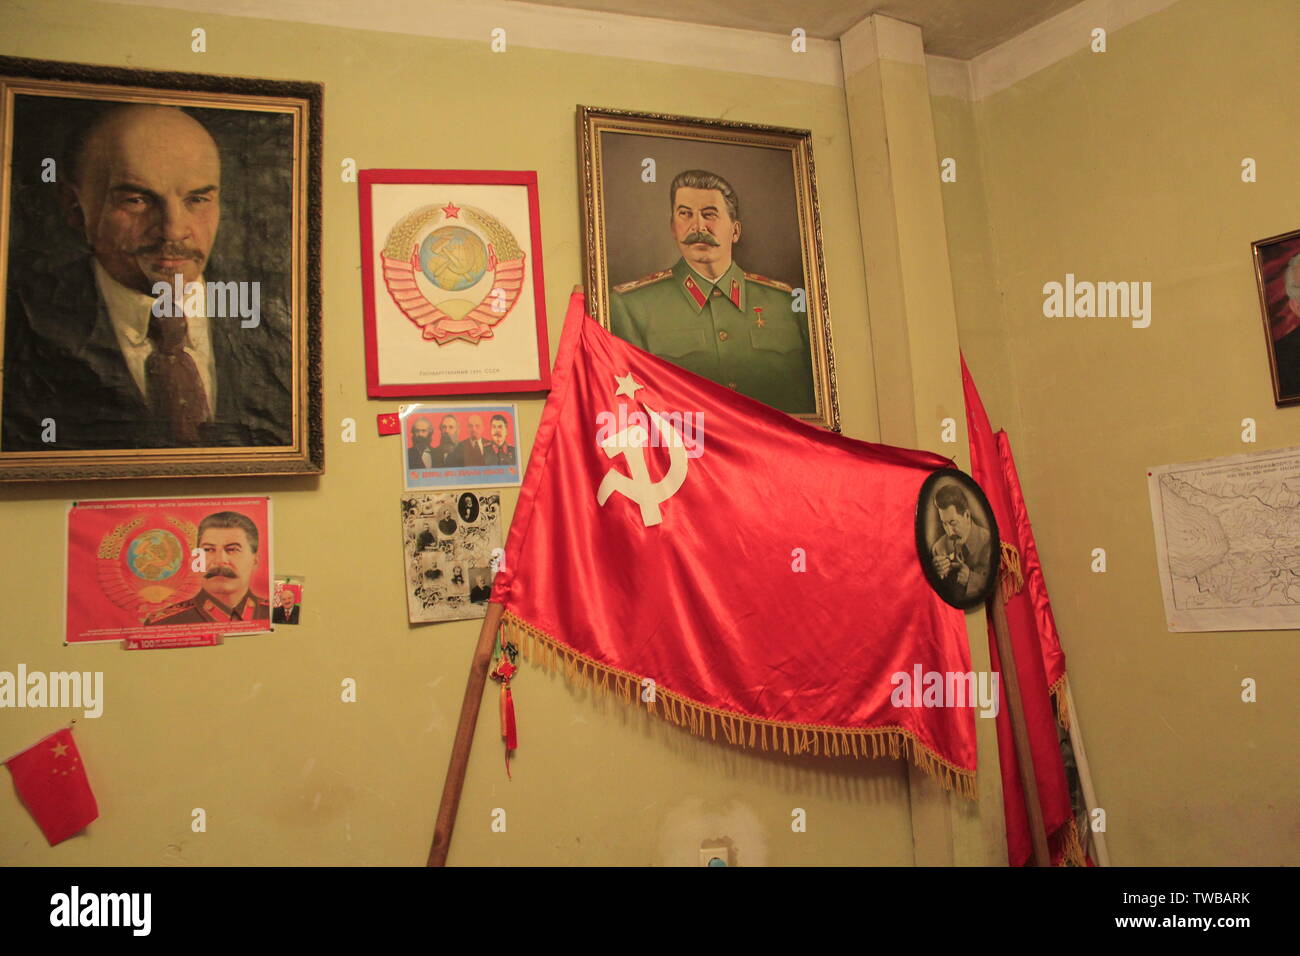 Josef-Stalin-Museum in Tbilisi - Подпольная типография Сталина в Тбилиси Stock Photo